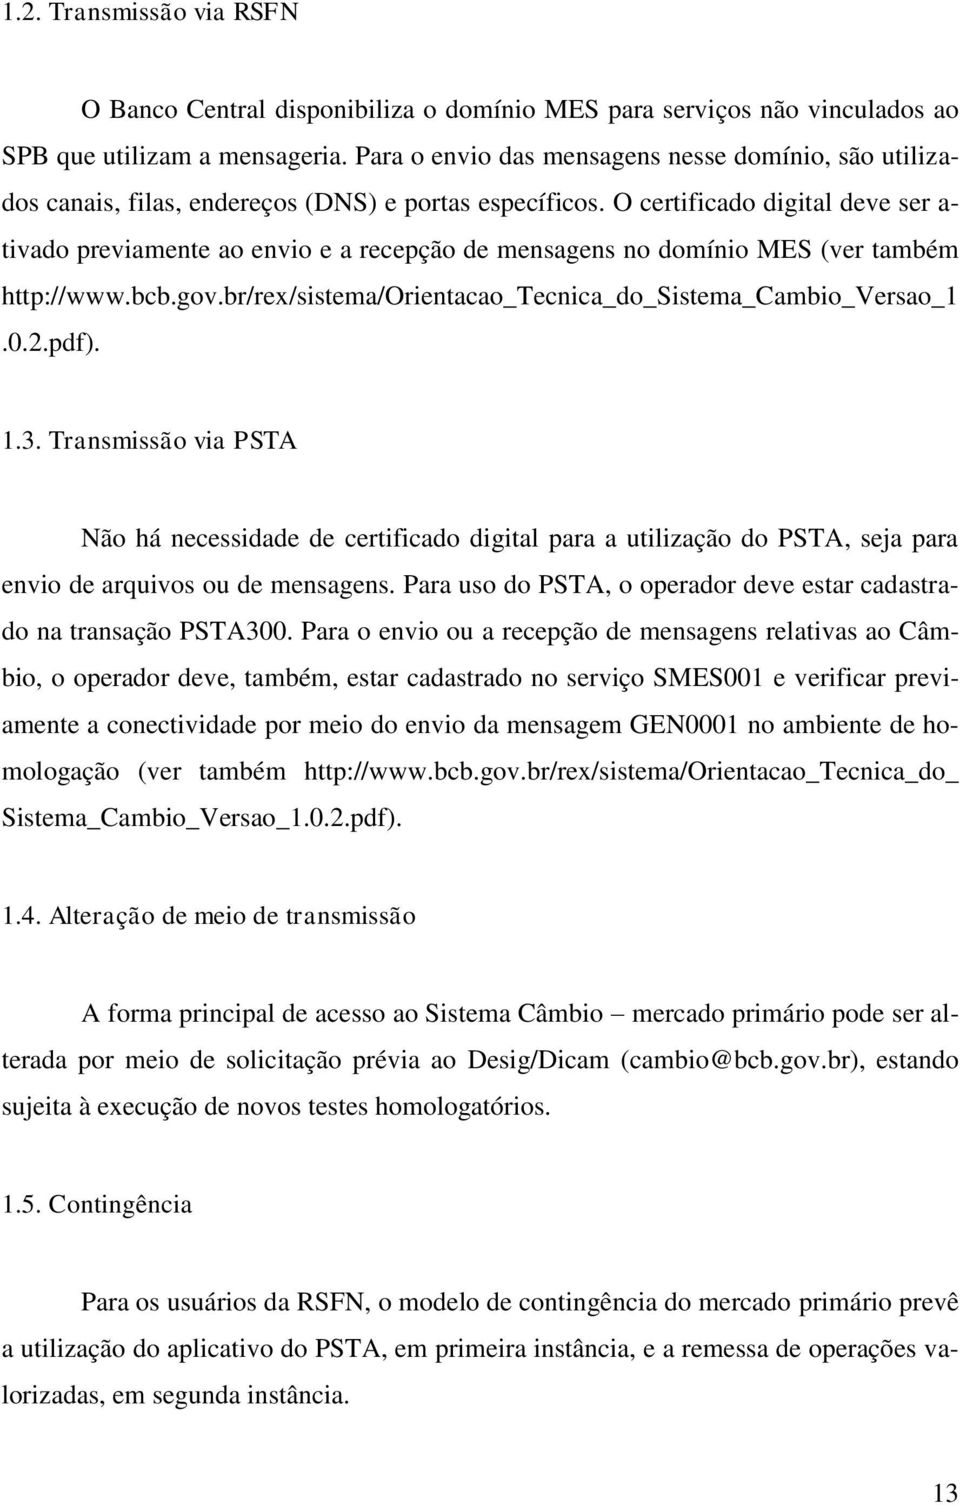 O certificado digital deve ser a- tivado previamente ao envio e a recepção de mensagens no domínio MES (ver também http://www.bcb.gov.br/rex/sistema/orientacao_tecnica_do_sistema_cambio_versao_1.0.2.